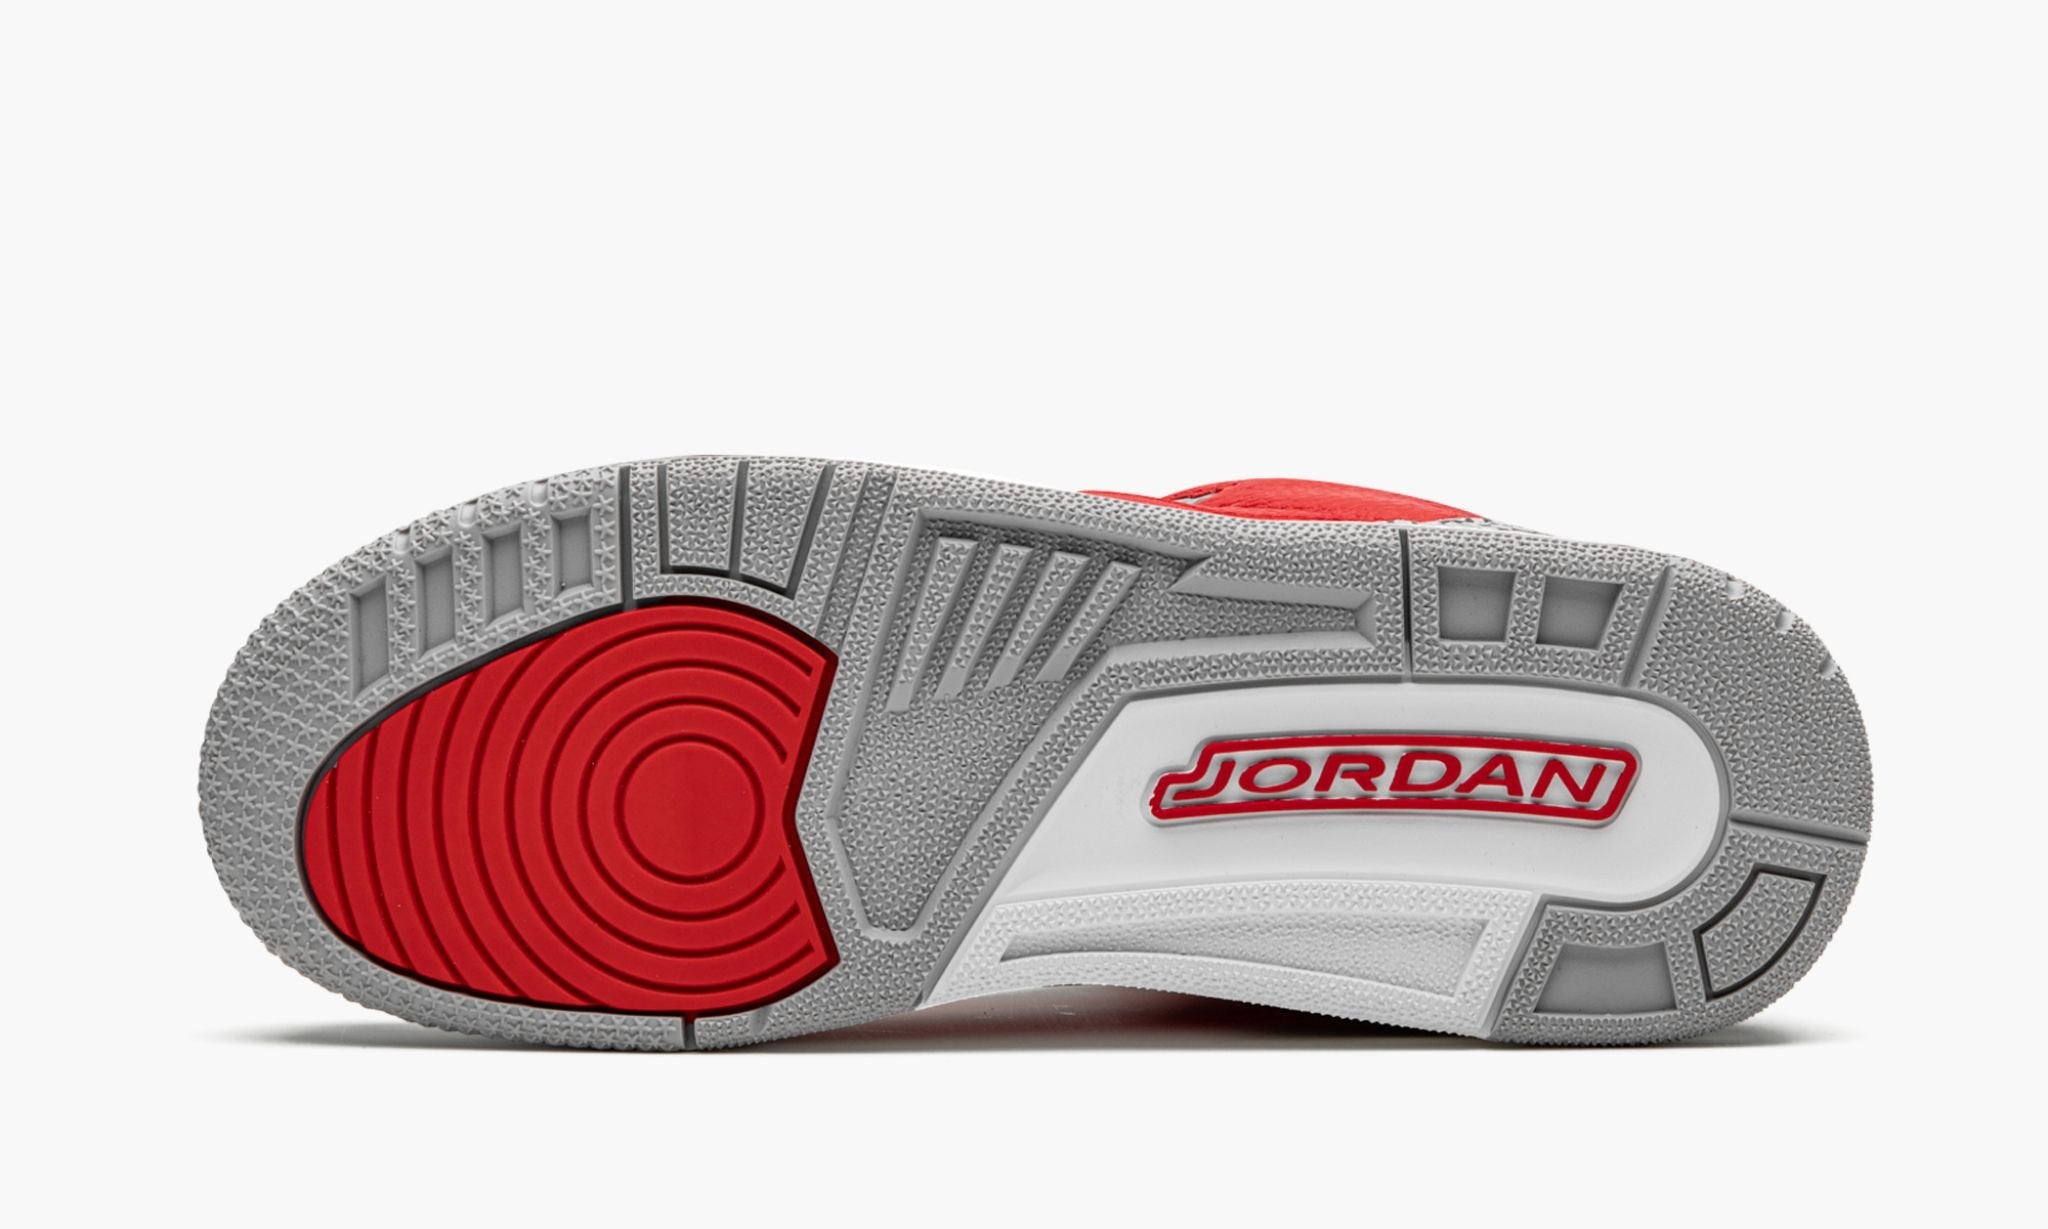 Jordan 3 "Red Cement" GS